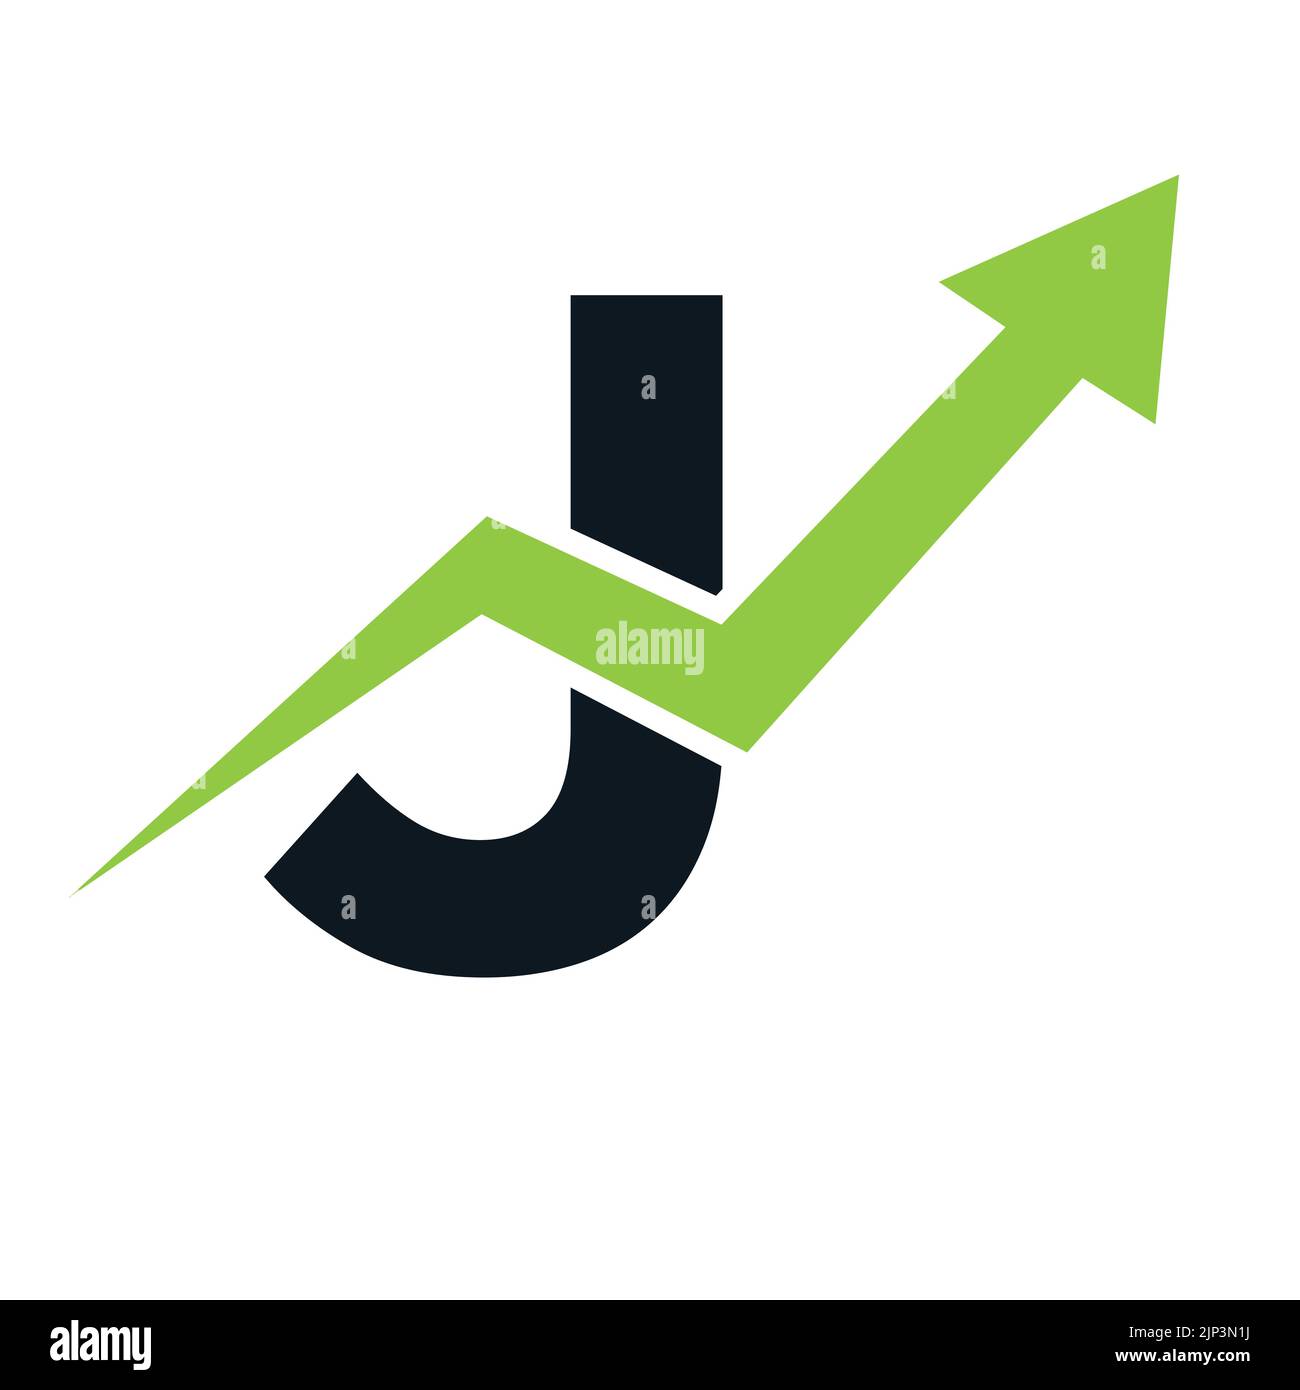 Lettre J logo financier. Concept de modèle de logo Finance et développement de l'investissement financier avec flèche de croissance des entreprises Illustration de Vecteur